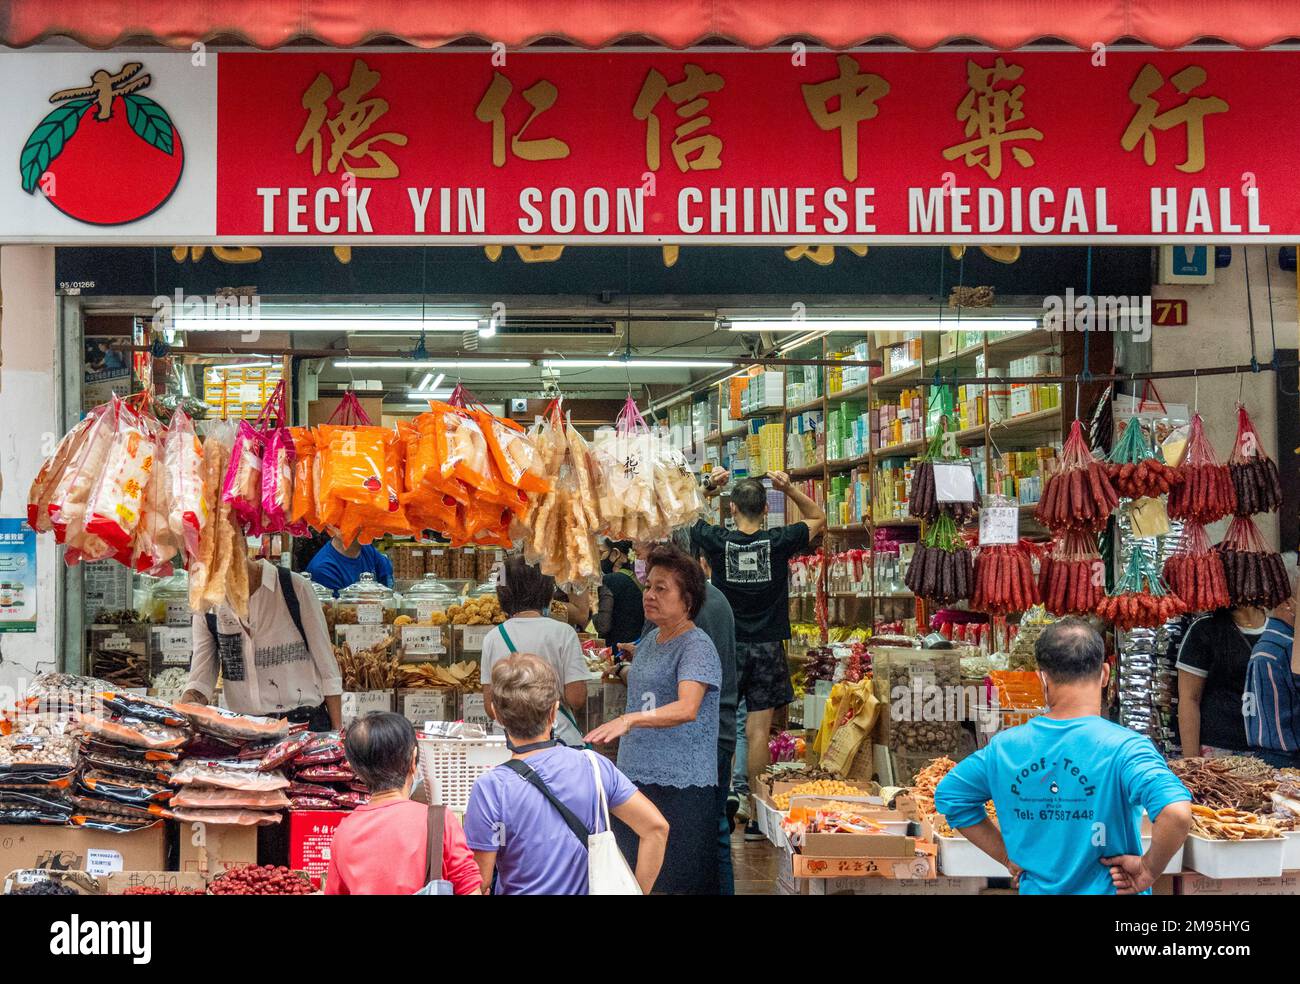 Teck Yin bald ein chinesischer Medizinladen in der Temple Street Chinatown Singapur Stockfoto